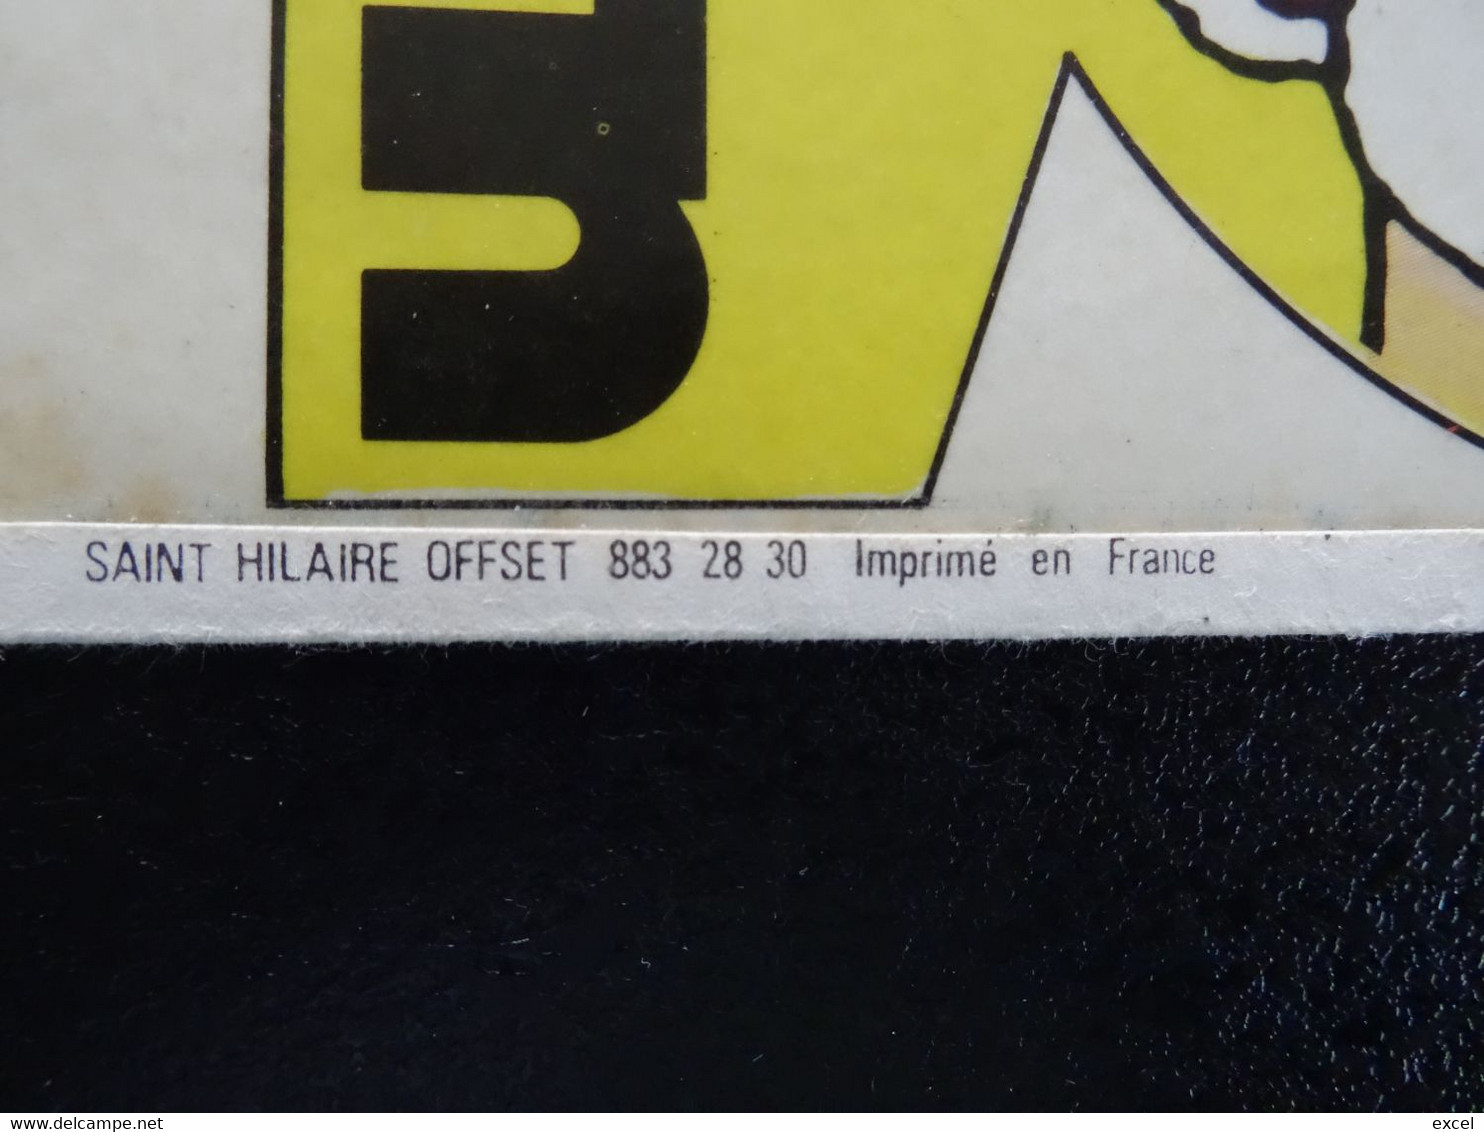 Autocollant Tintin - Supplément Journal Tintin N°21 1973 - Autocollants